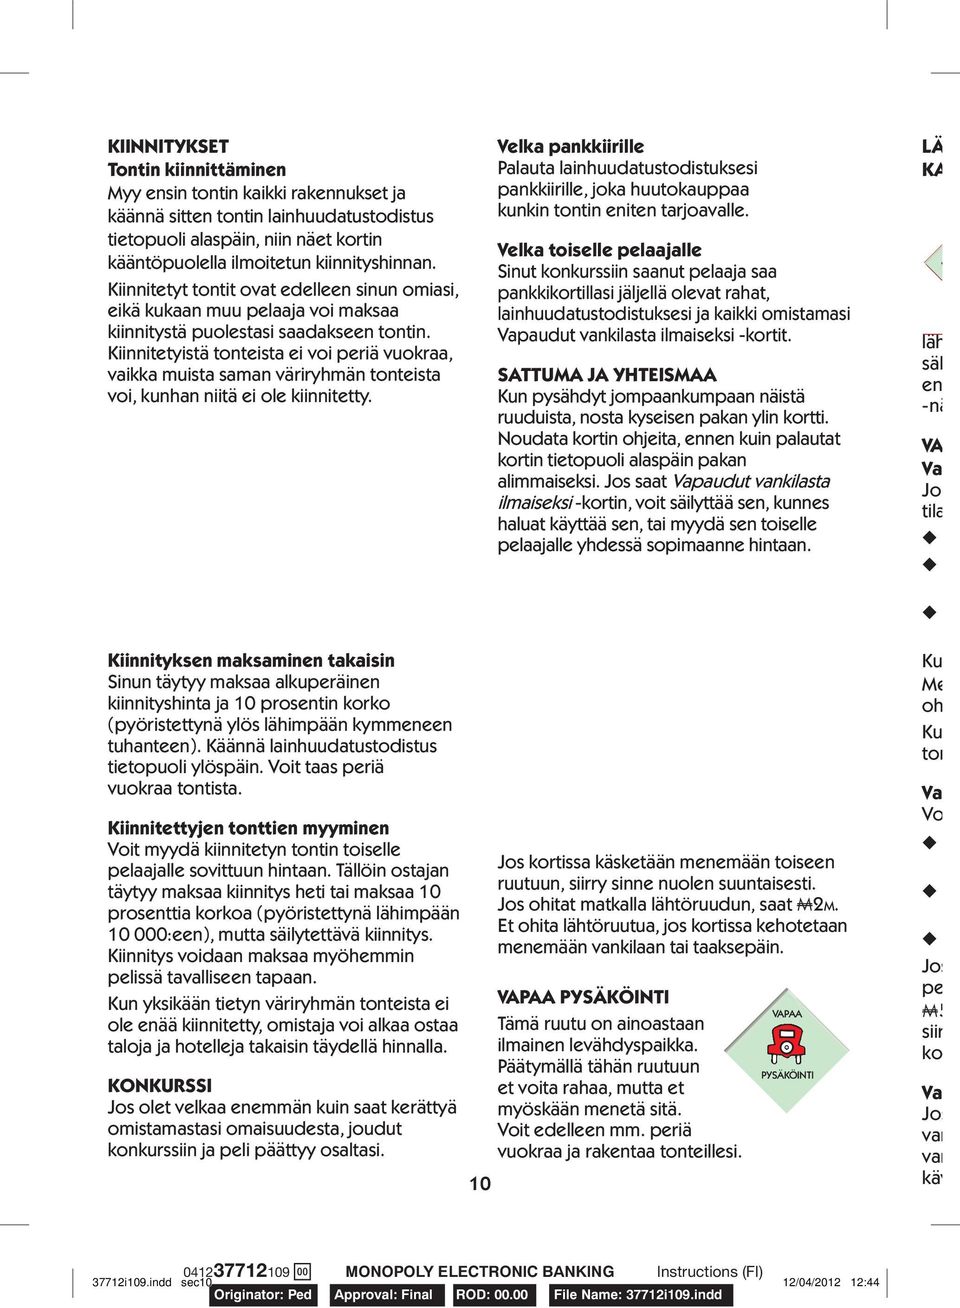 PIKAPELI NOPEA MONOPOLY - PDF Free Download